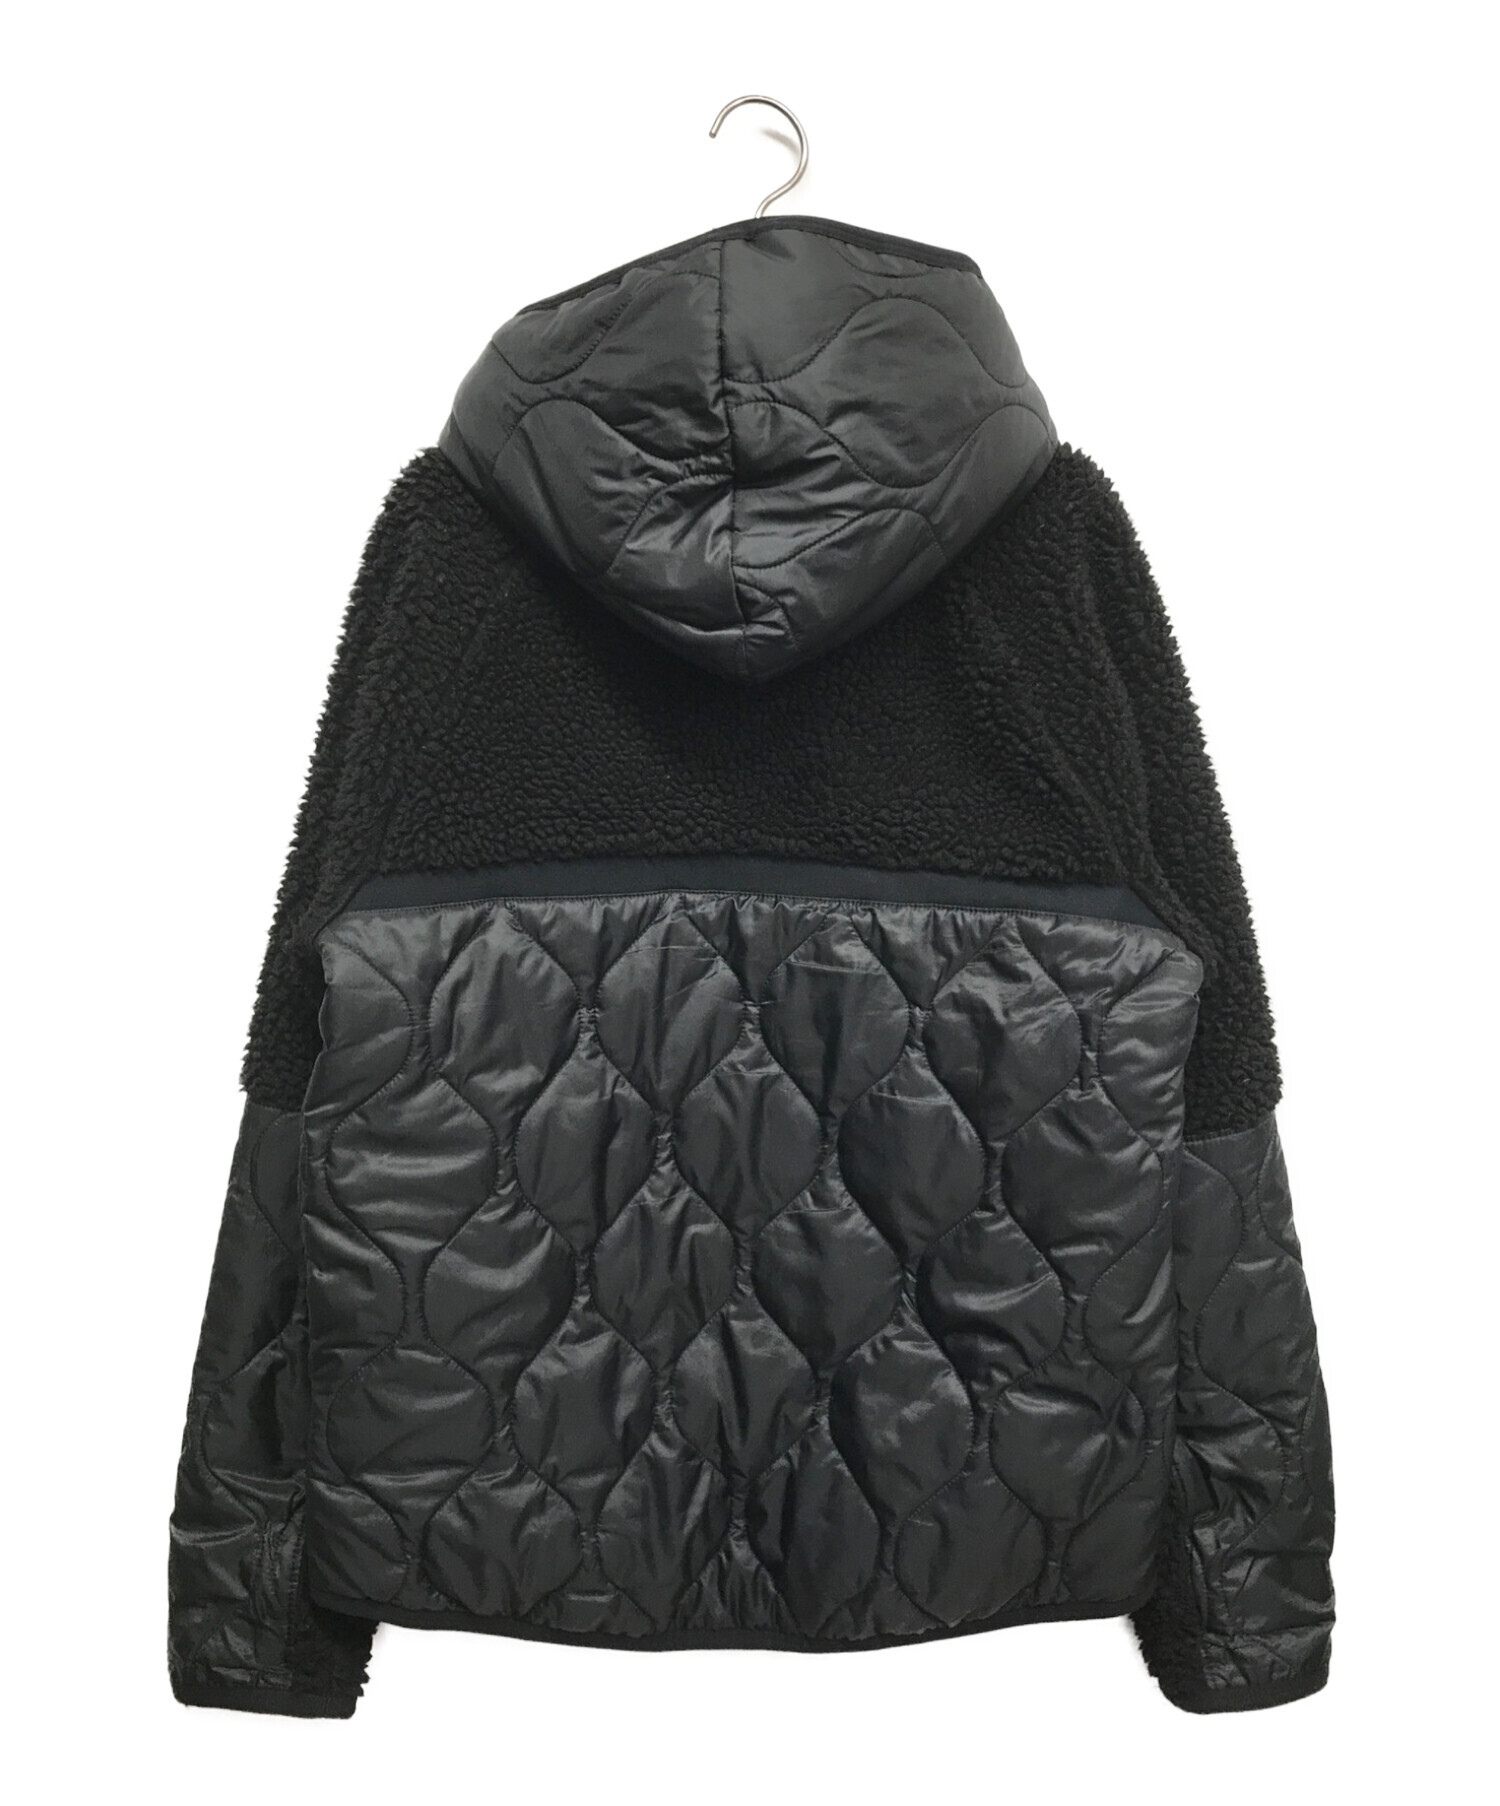 NIKE (ナイキ) ボアフリース キルティングジャケット ブラック サイズ:M